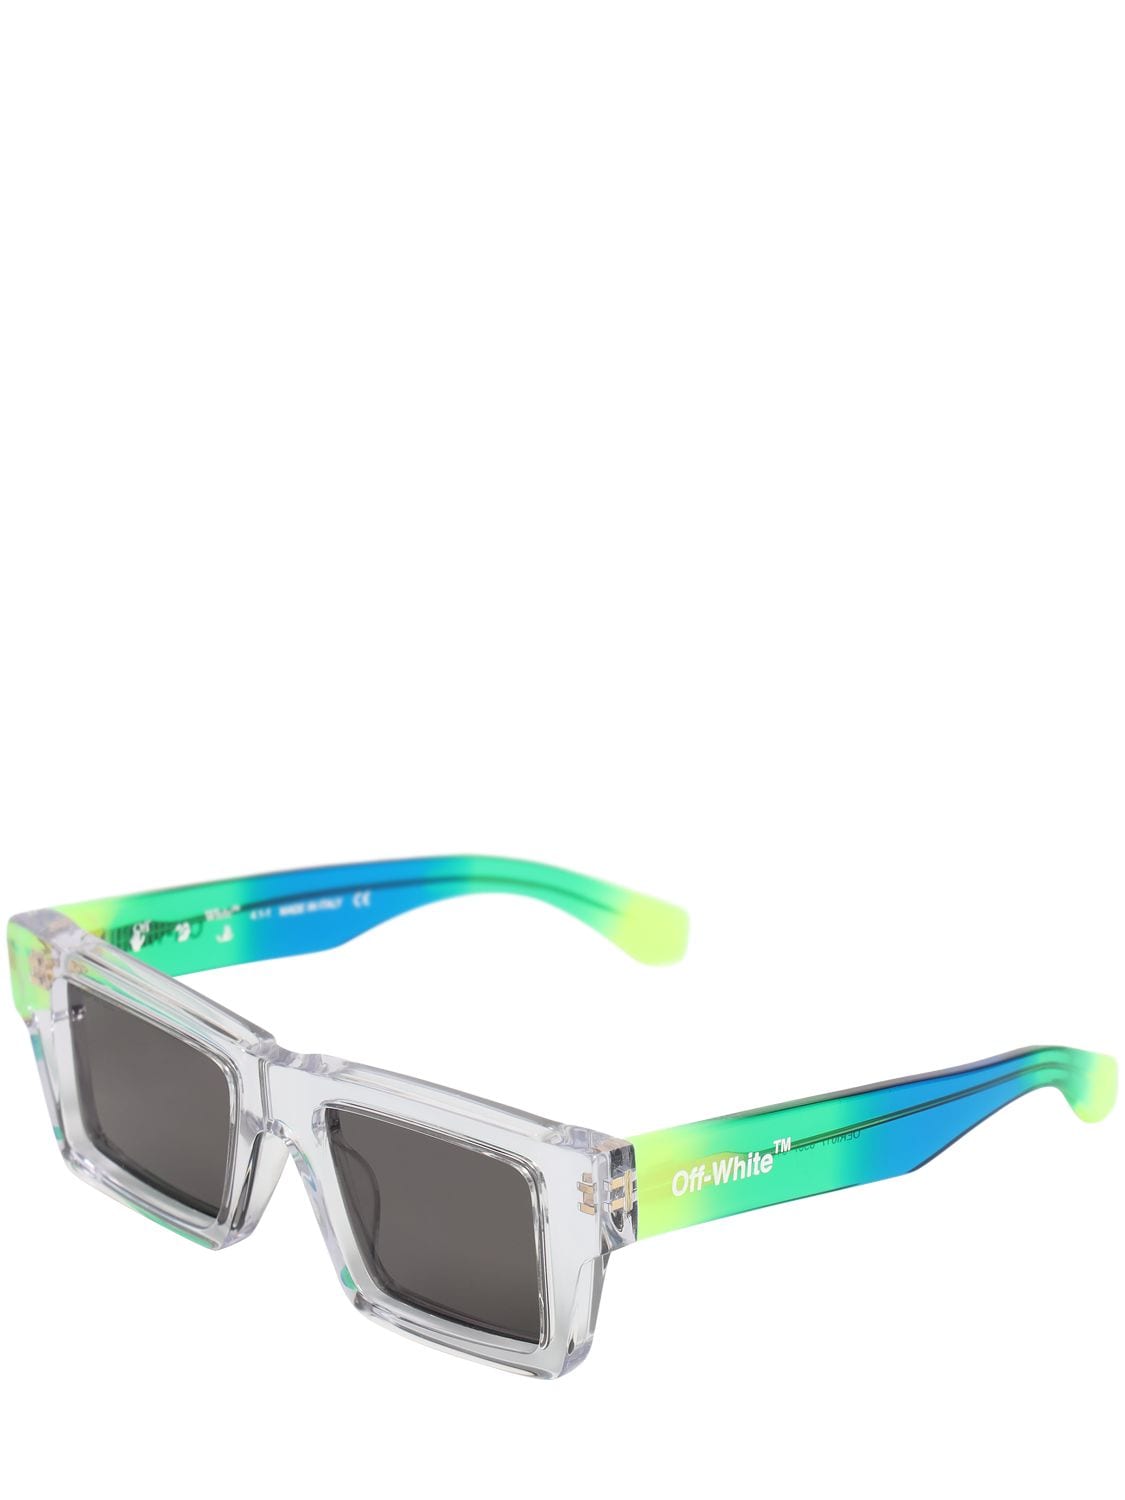 Shop Off-White Nassau 147MM Rectangular Sunglasses